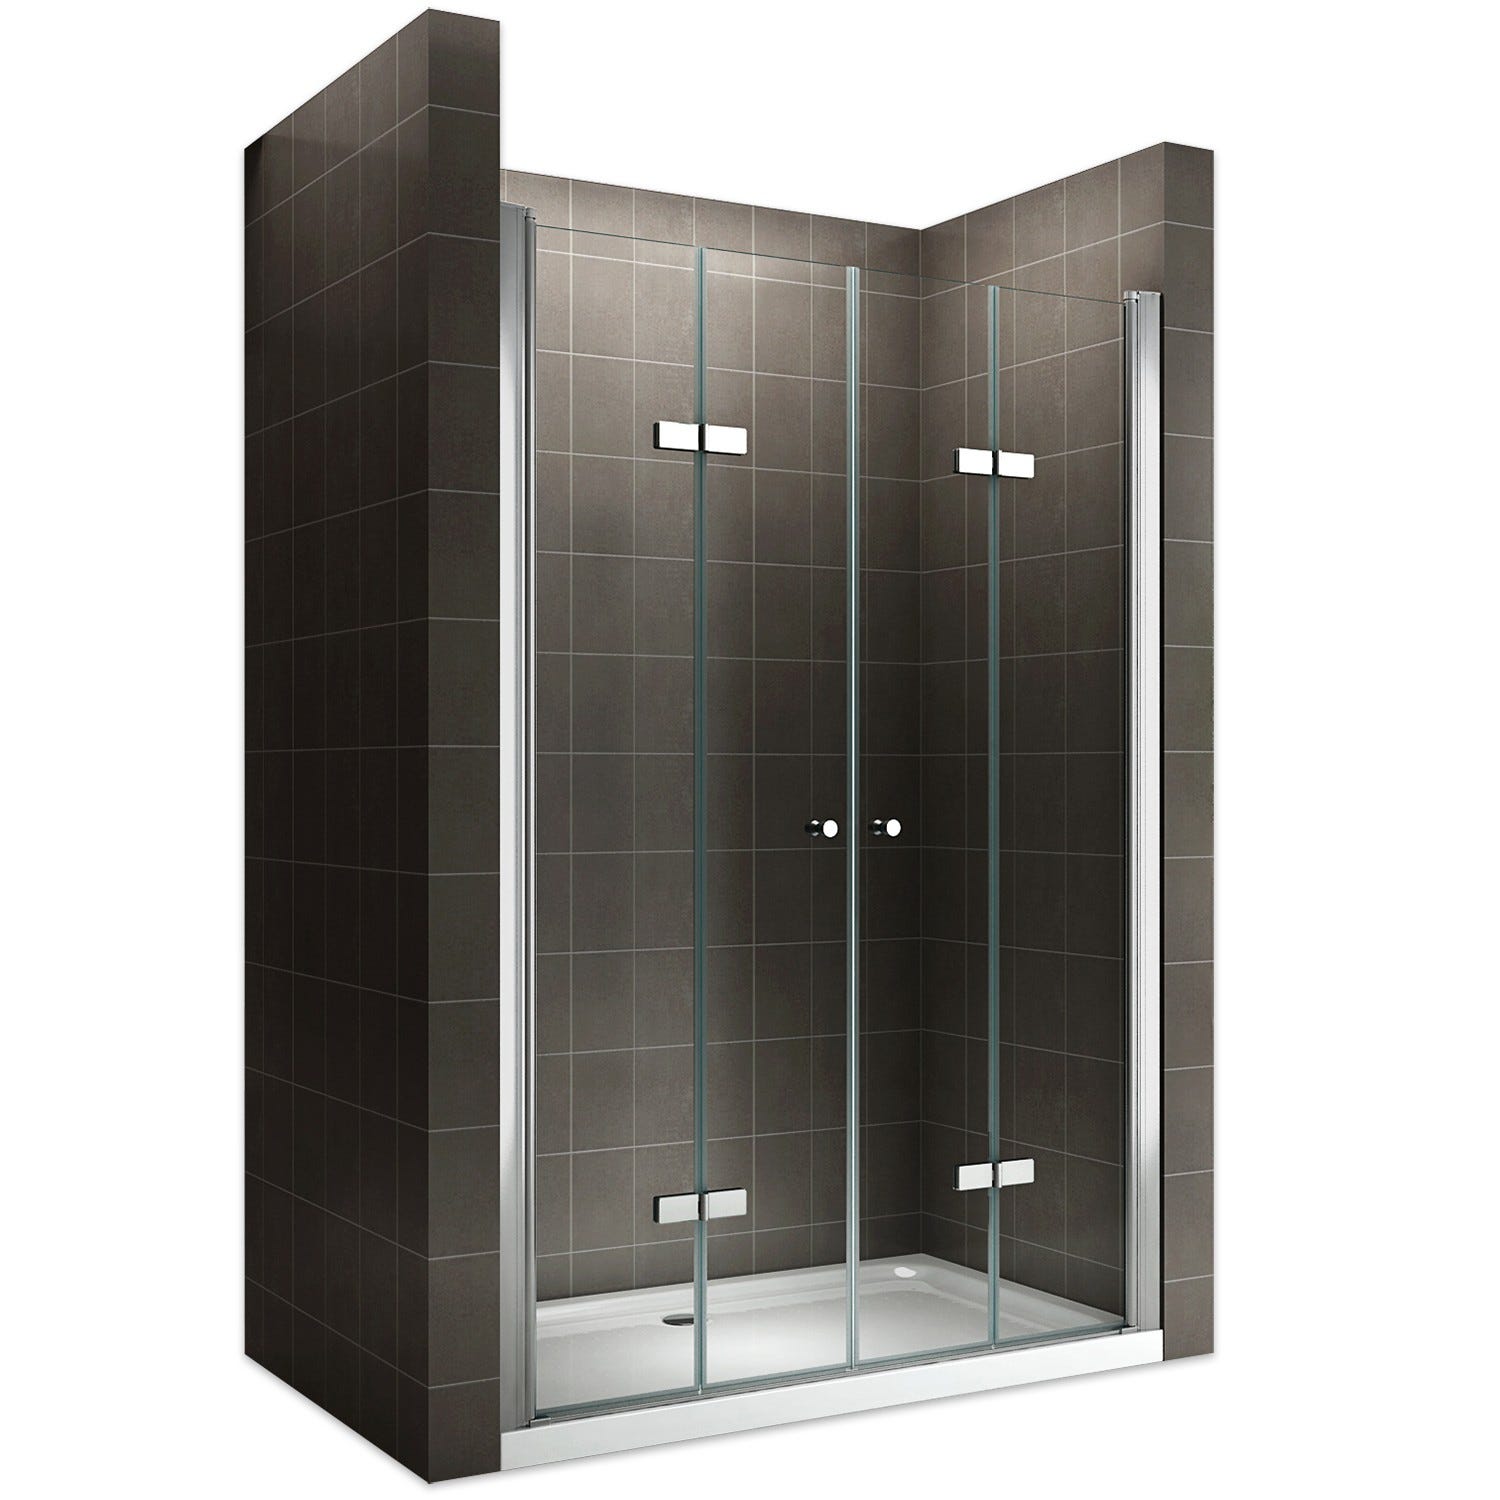 EMMY Porte de douche pliante pivotante H 185 cm largeur réglable 76 à 80 cm verre transparent 0